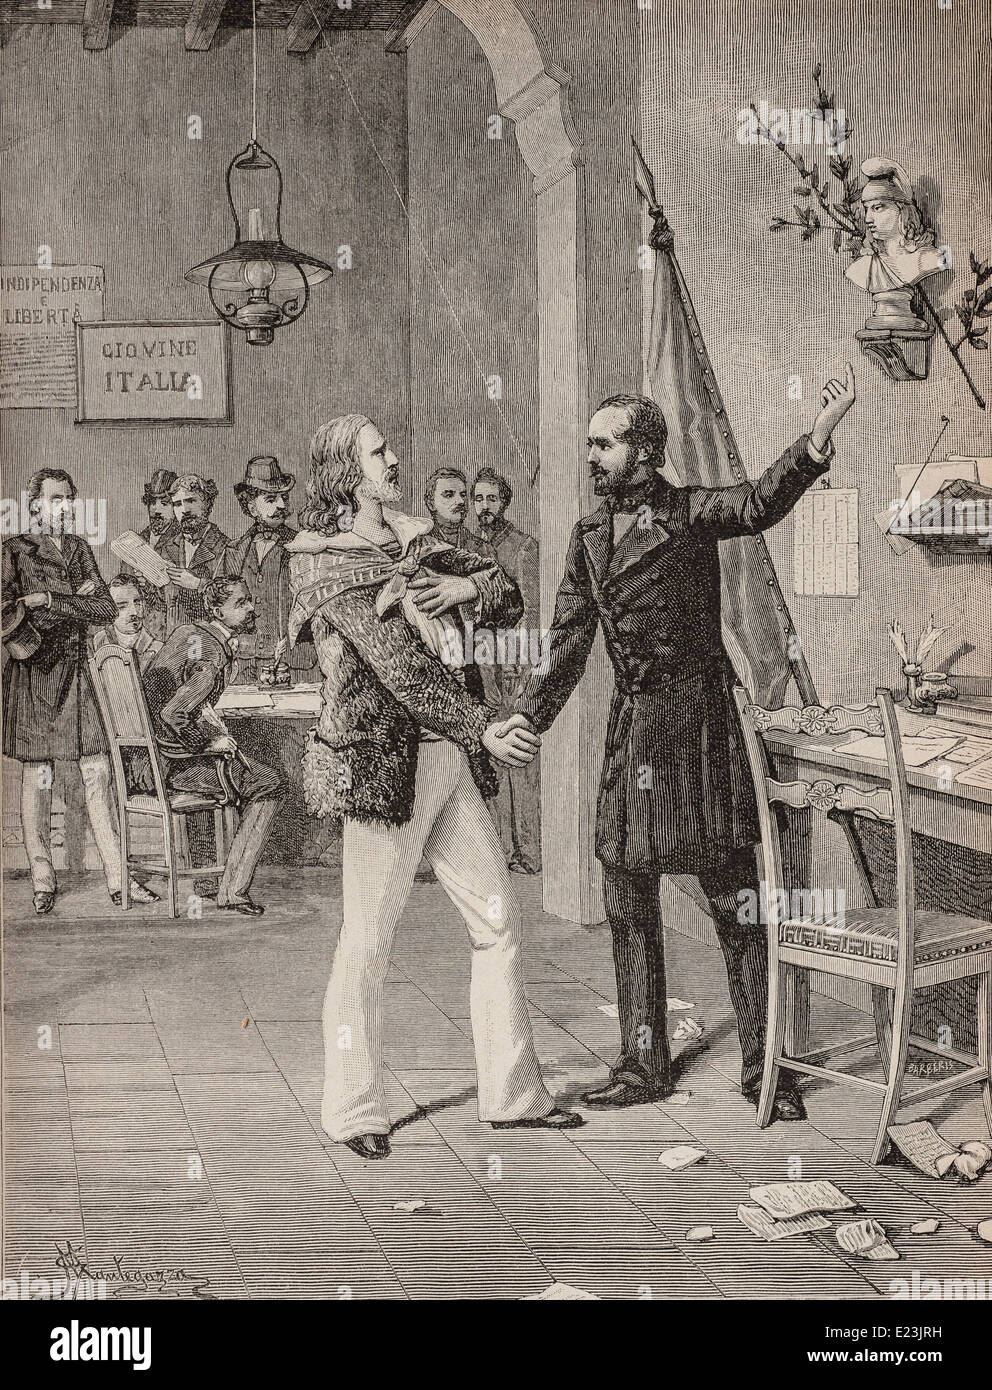 Giuseppe Mazzini du livre de Jessie W. Mario de vie de Mazzini Première réunion entre Mazzini et Garibaldi Banque D'Images